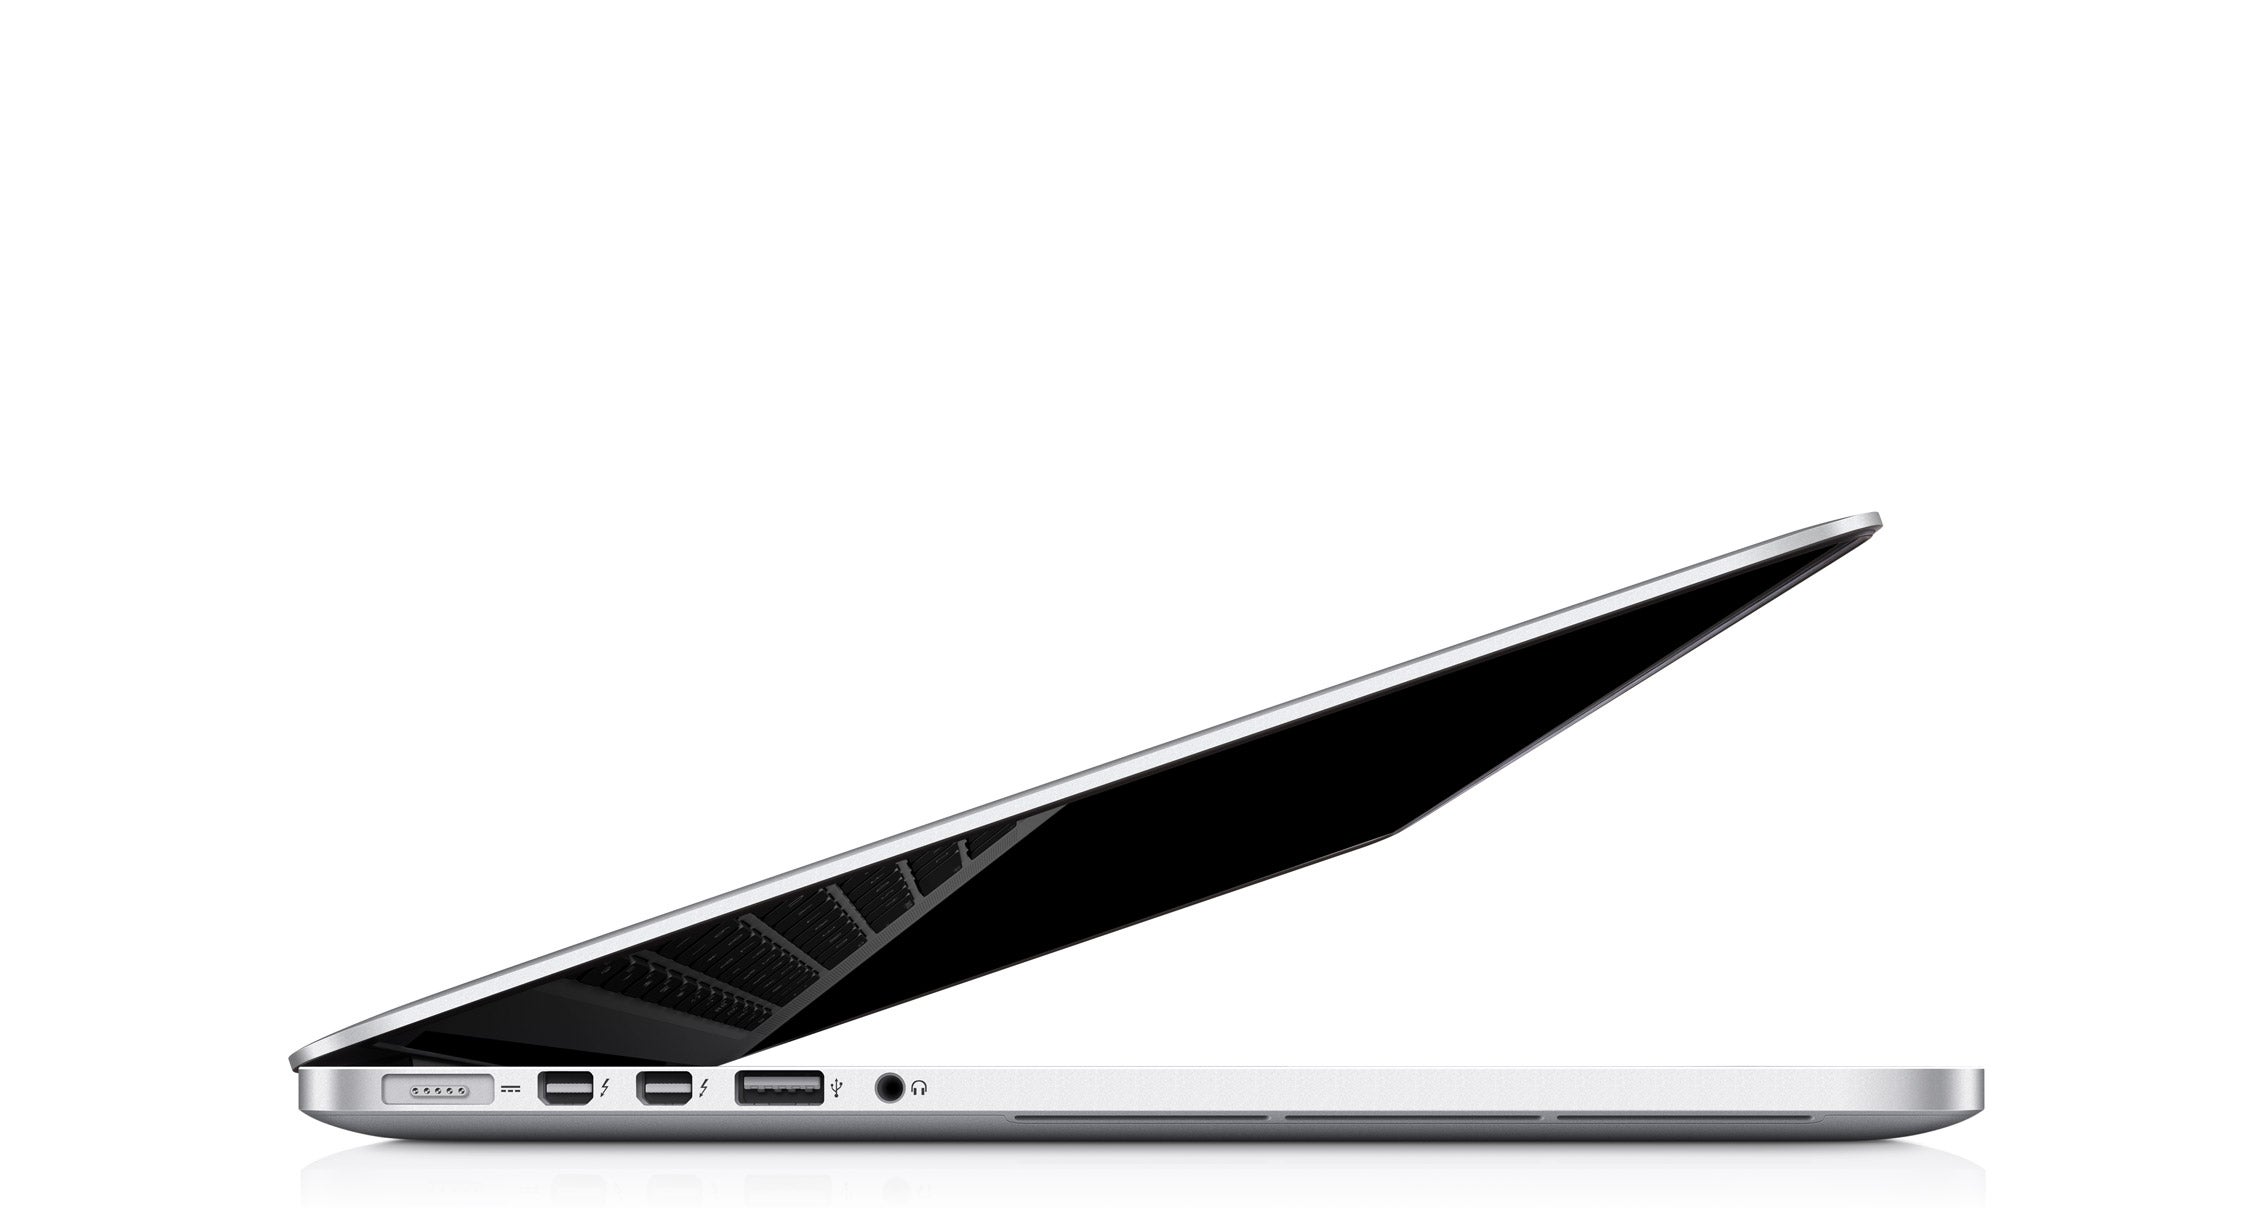 Retina MacBook Pro: Với màn hình Retina, MacBook Pro hiển thị hình ảnh rõ ràng và đầy đủ chi tiết. Bạn sẽ không tìm thấy bất kỳ điểm ảnh nào trên màn hình này. Ngoài ra, MacBook Pro máy tính xách tay còn sở hữu hiệu suất mạnh mẽ và thiết kế tinh tế, làm cho nó là một trong những laptop tốt nhất hiện nay.